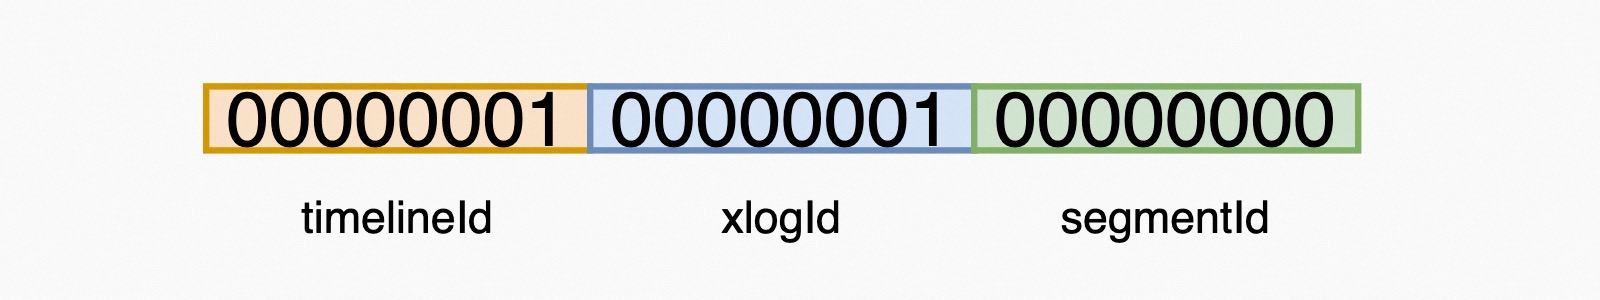 XLog File Name